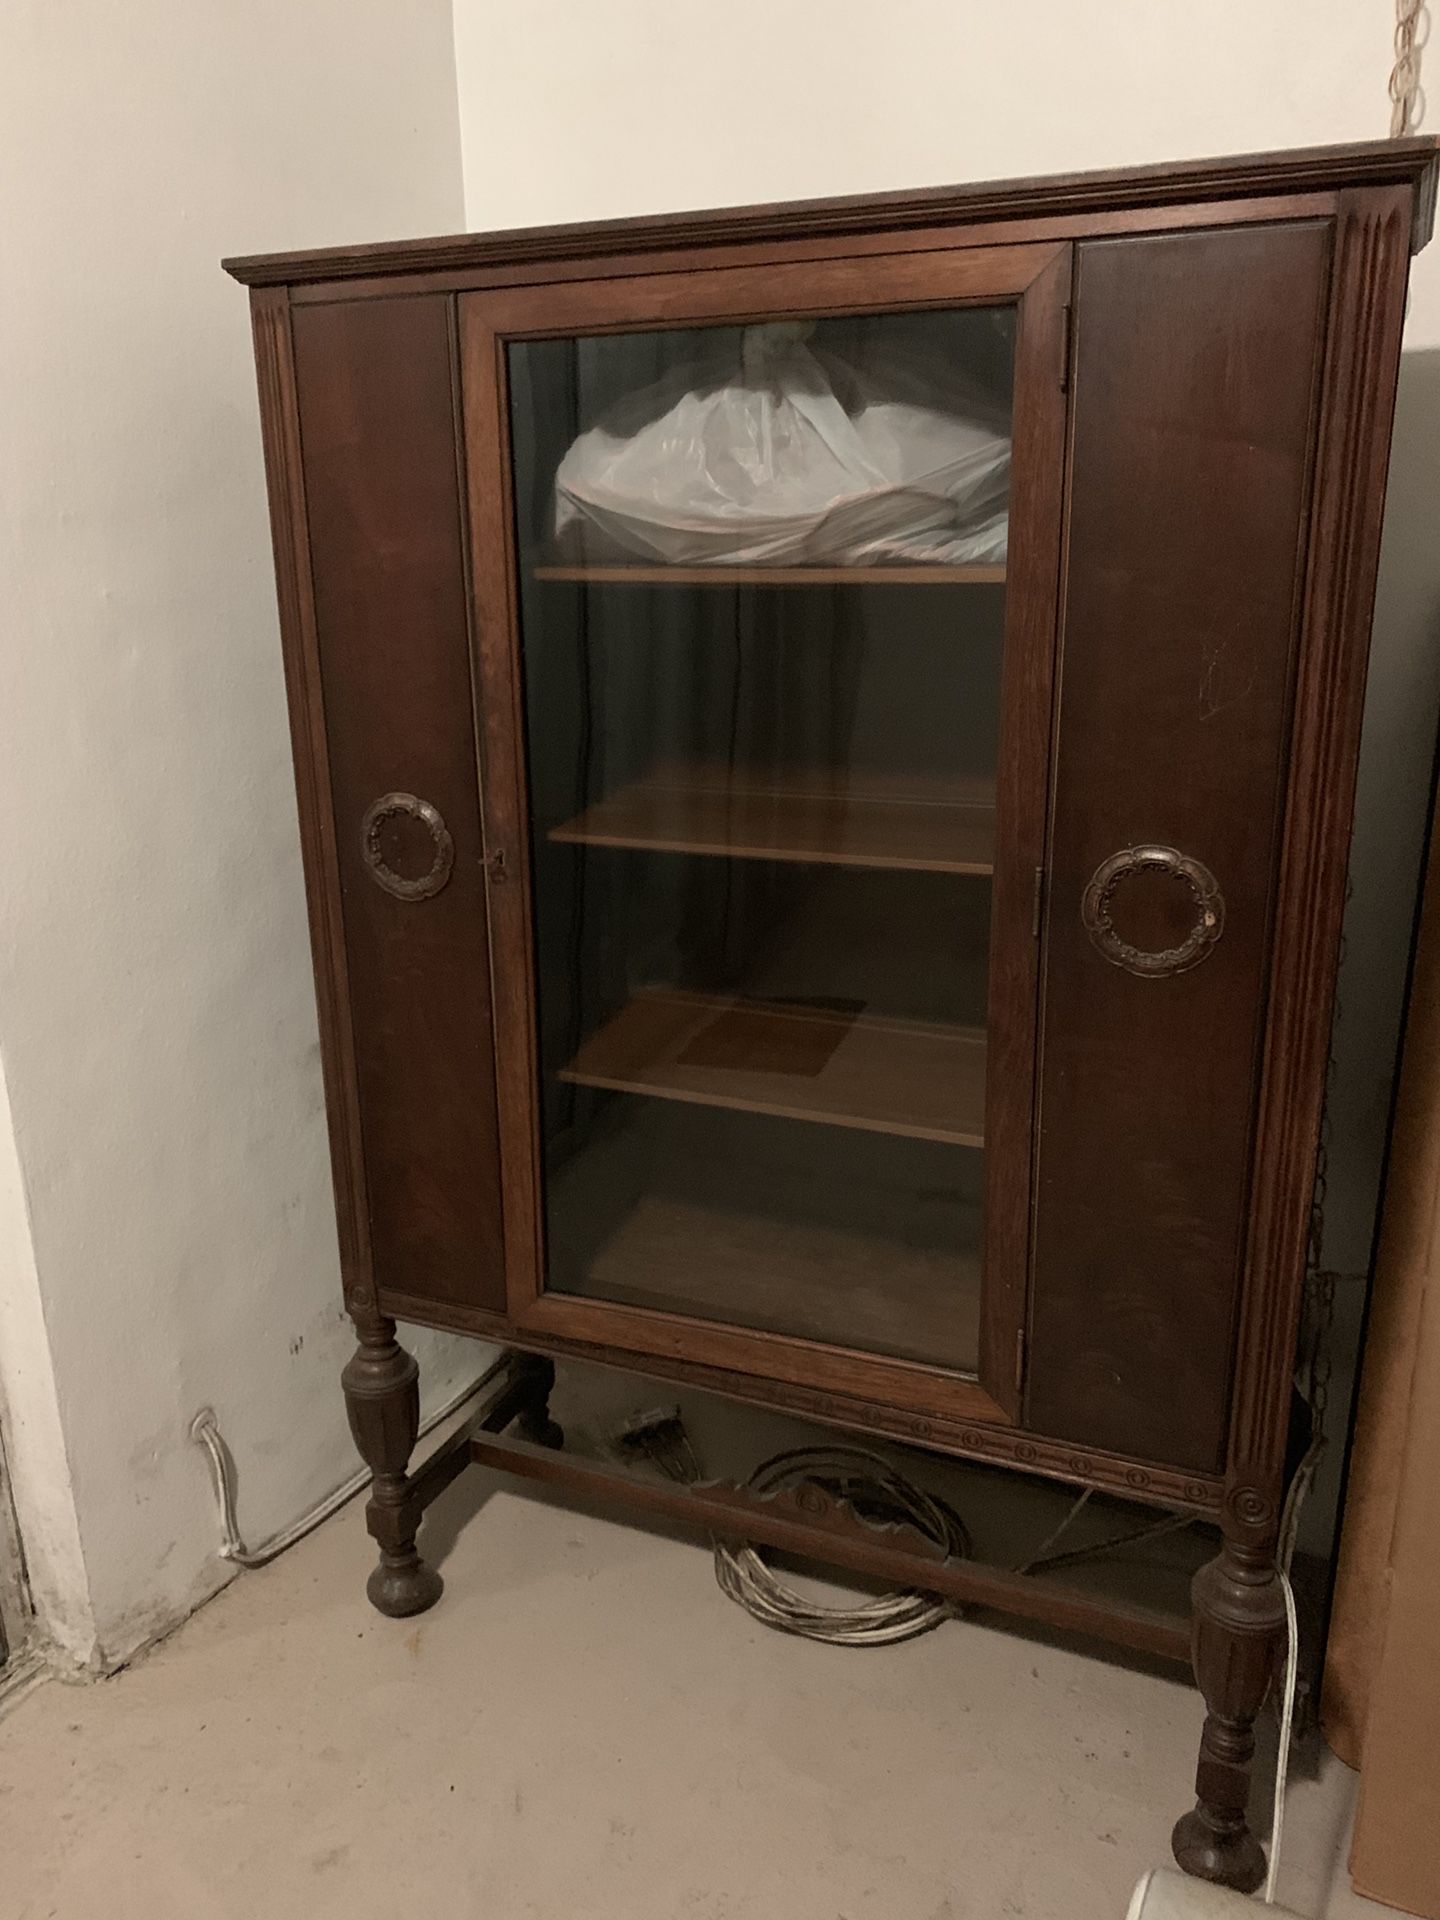 Vintage wardrobe, brown wood cabinet